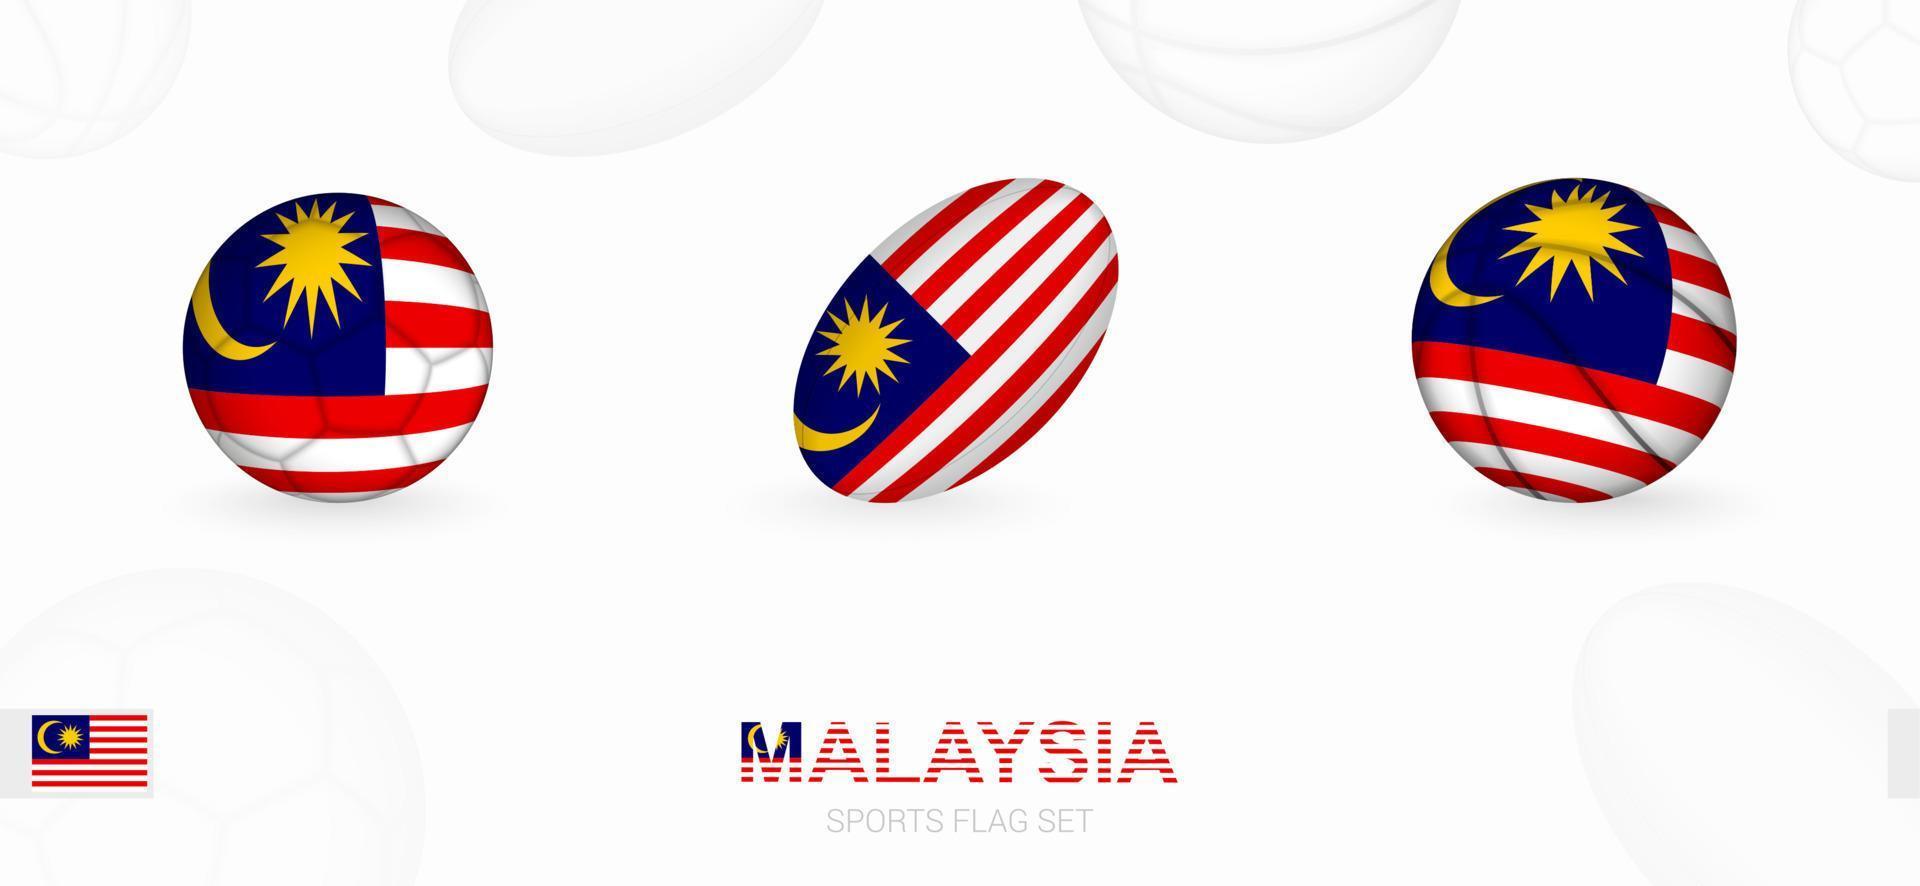 Deportes íconos para fútbol, rugby y baloncesto con el bandera de Malasia. vector